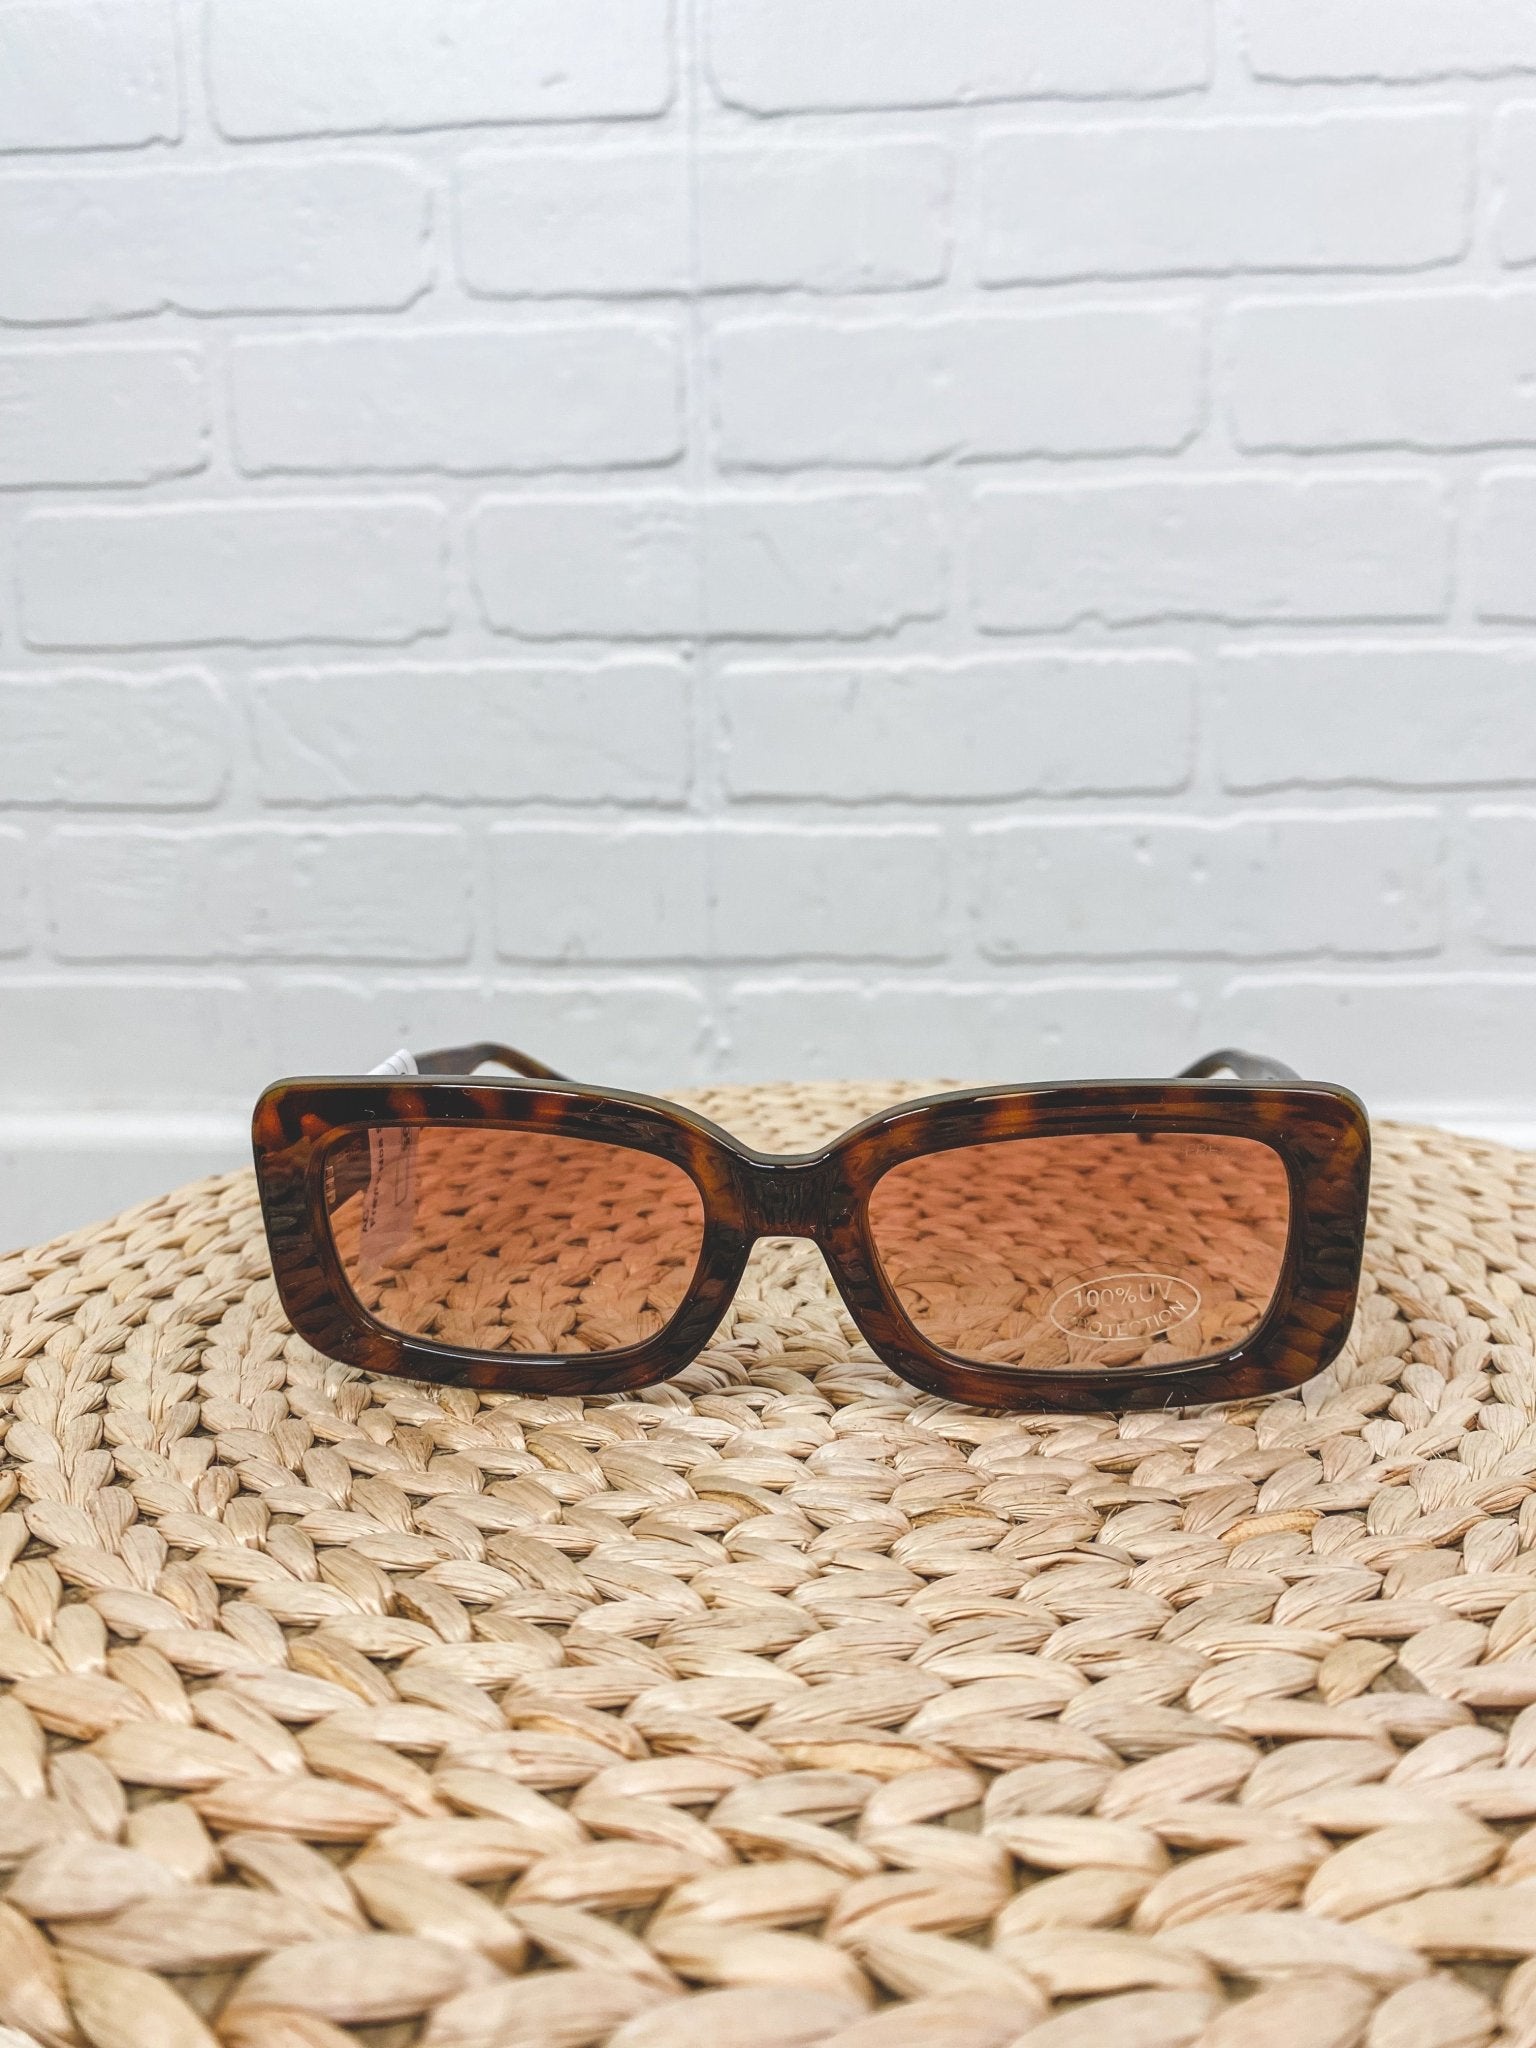 Freyrs Noa sunglasses tortoise - Cute Sunglasses - Fun Wayfarers at Lush Fashion Lounge Boutique in Oklahoma